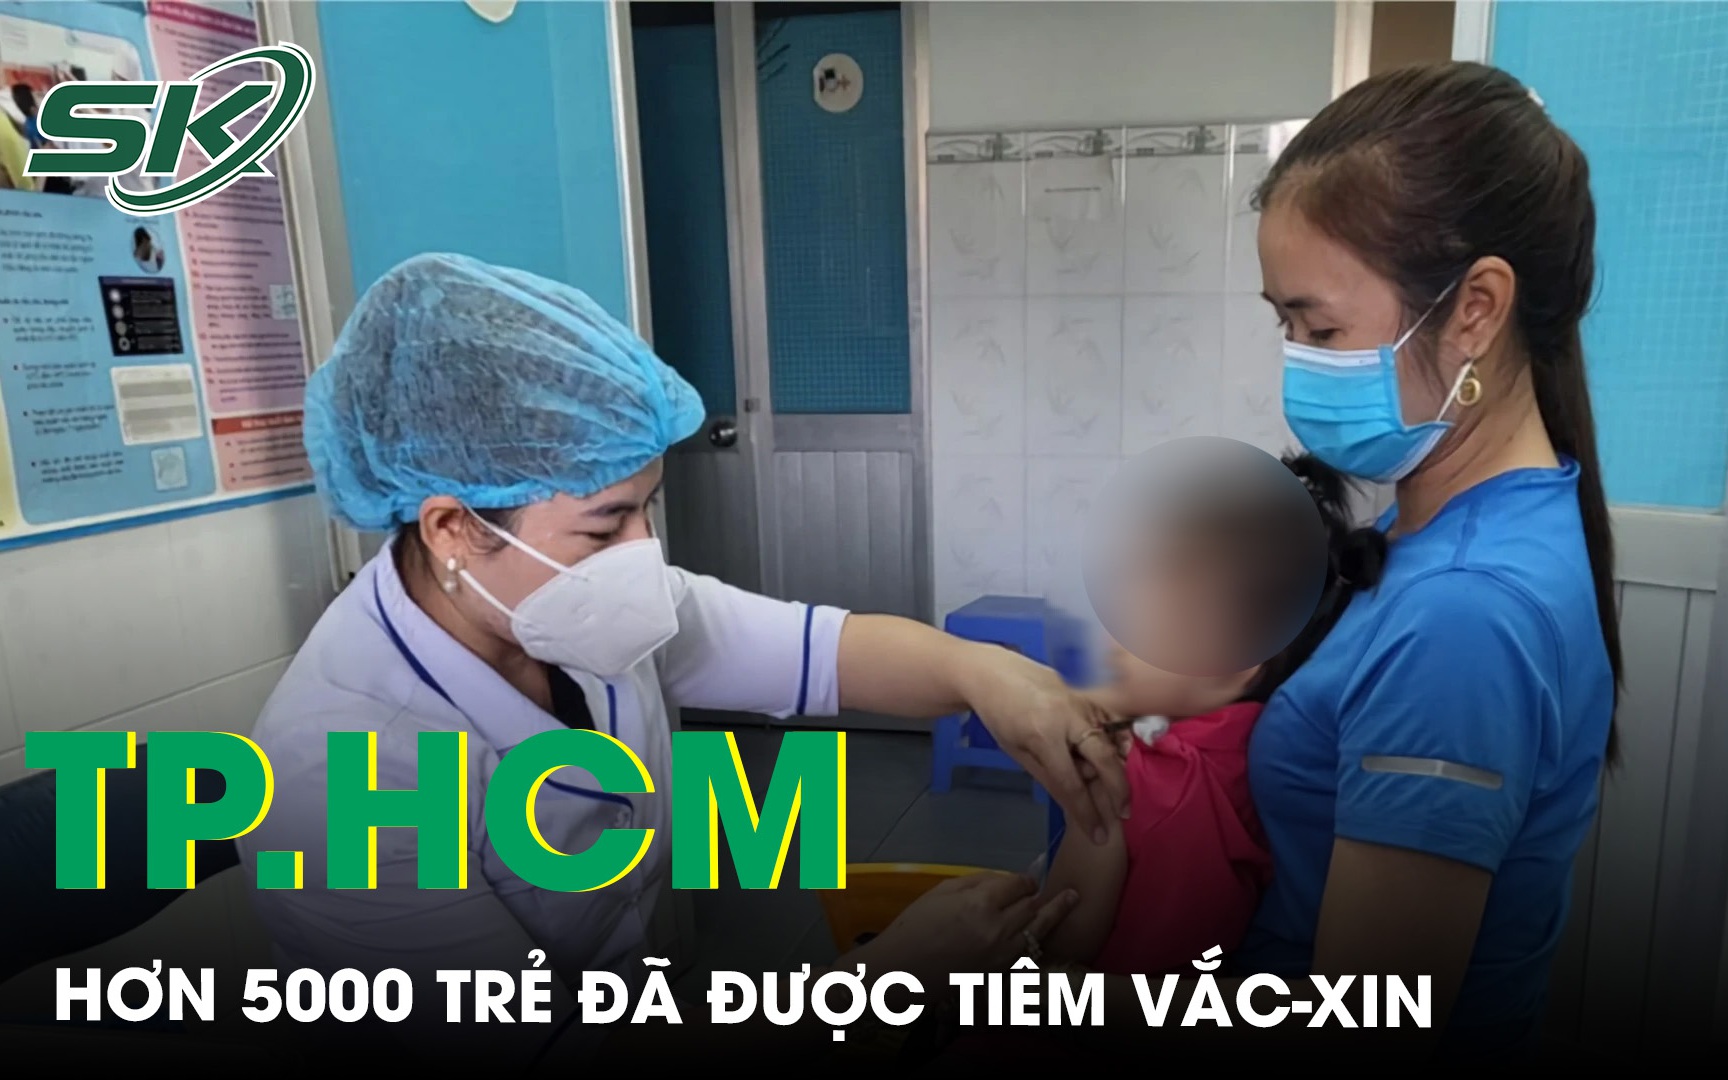 TP.HCM sau 1 tuần triển khai tiêm chủng mở rộng đã có hơn 5000 trẻ được tiêm vaccine 5 trong 1